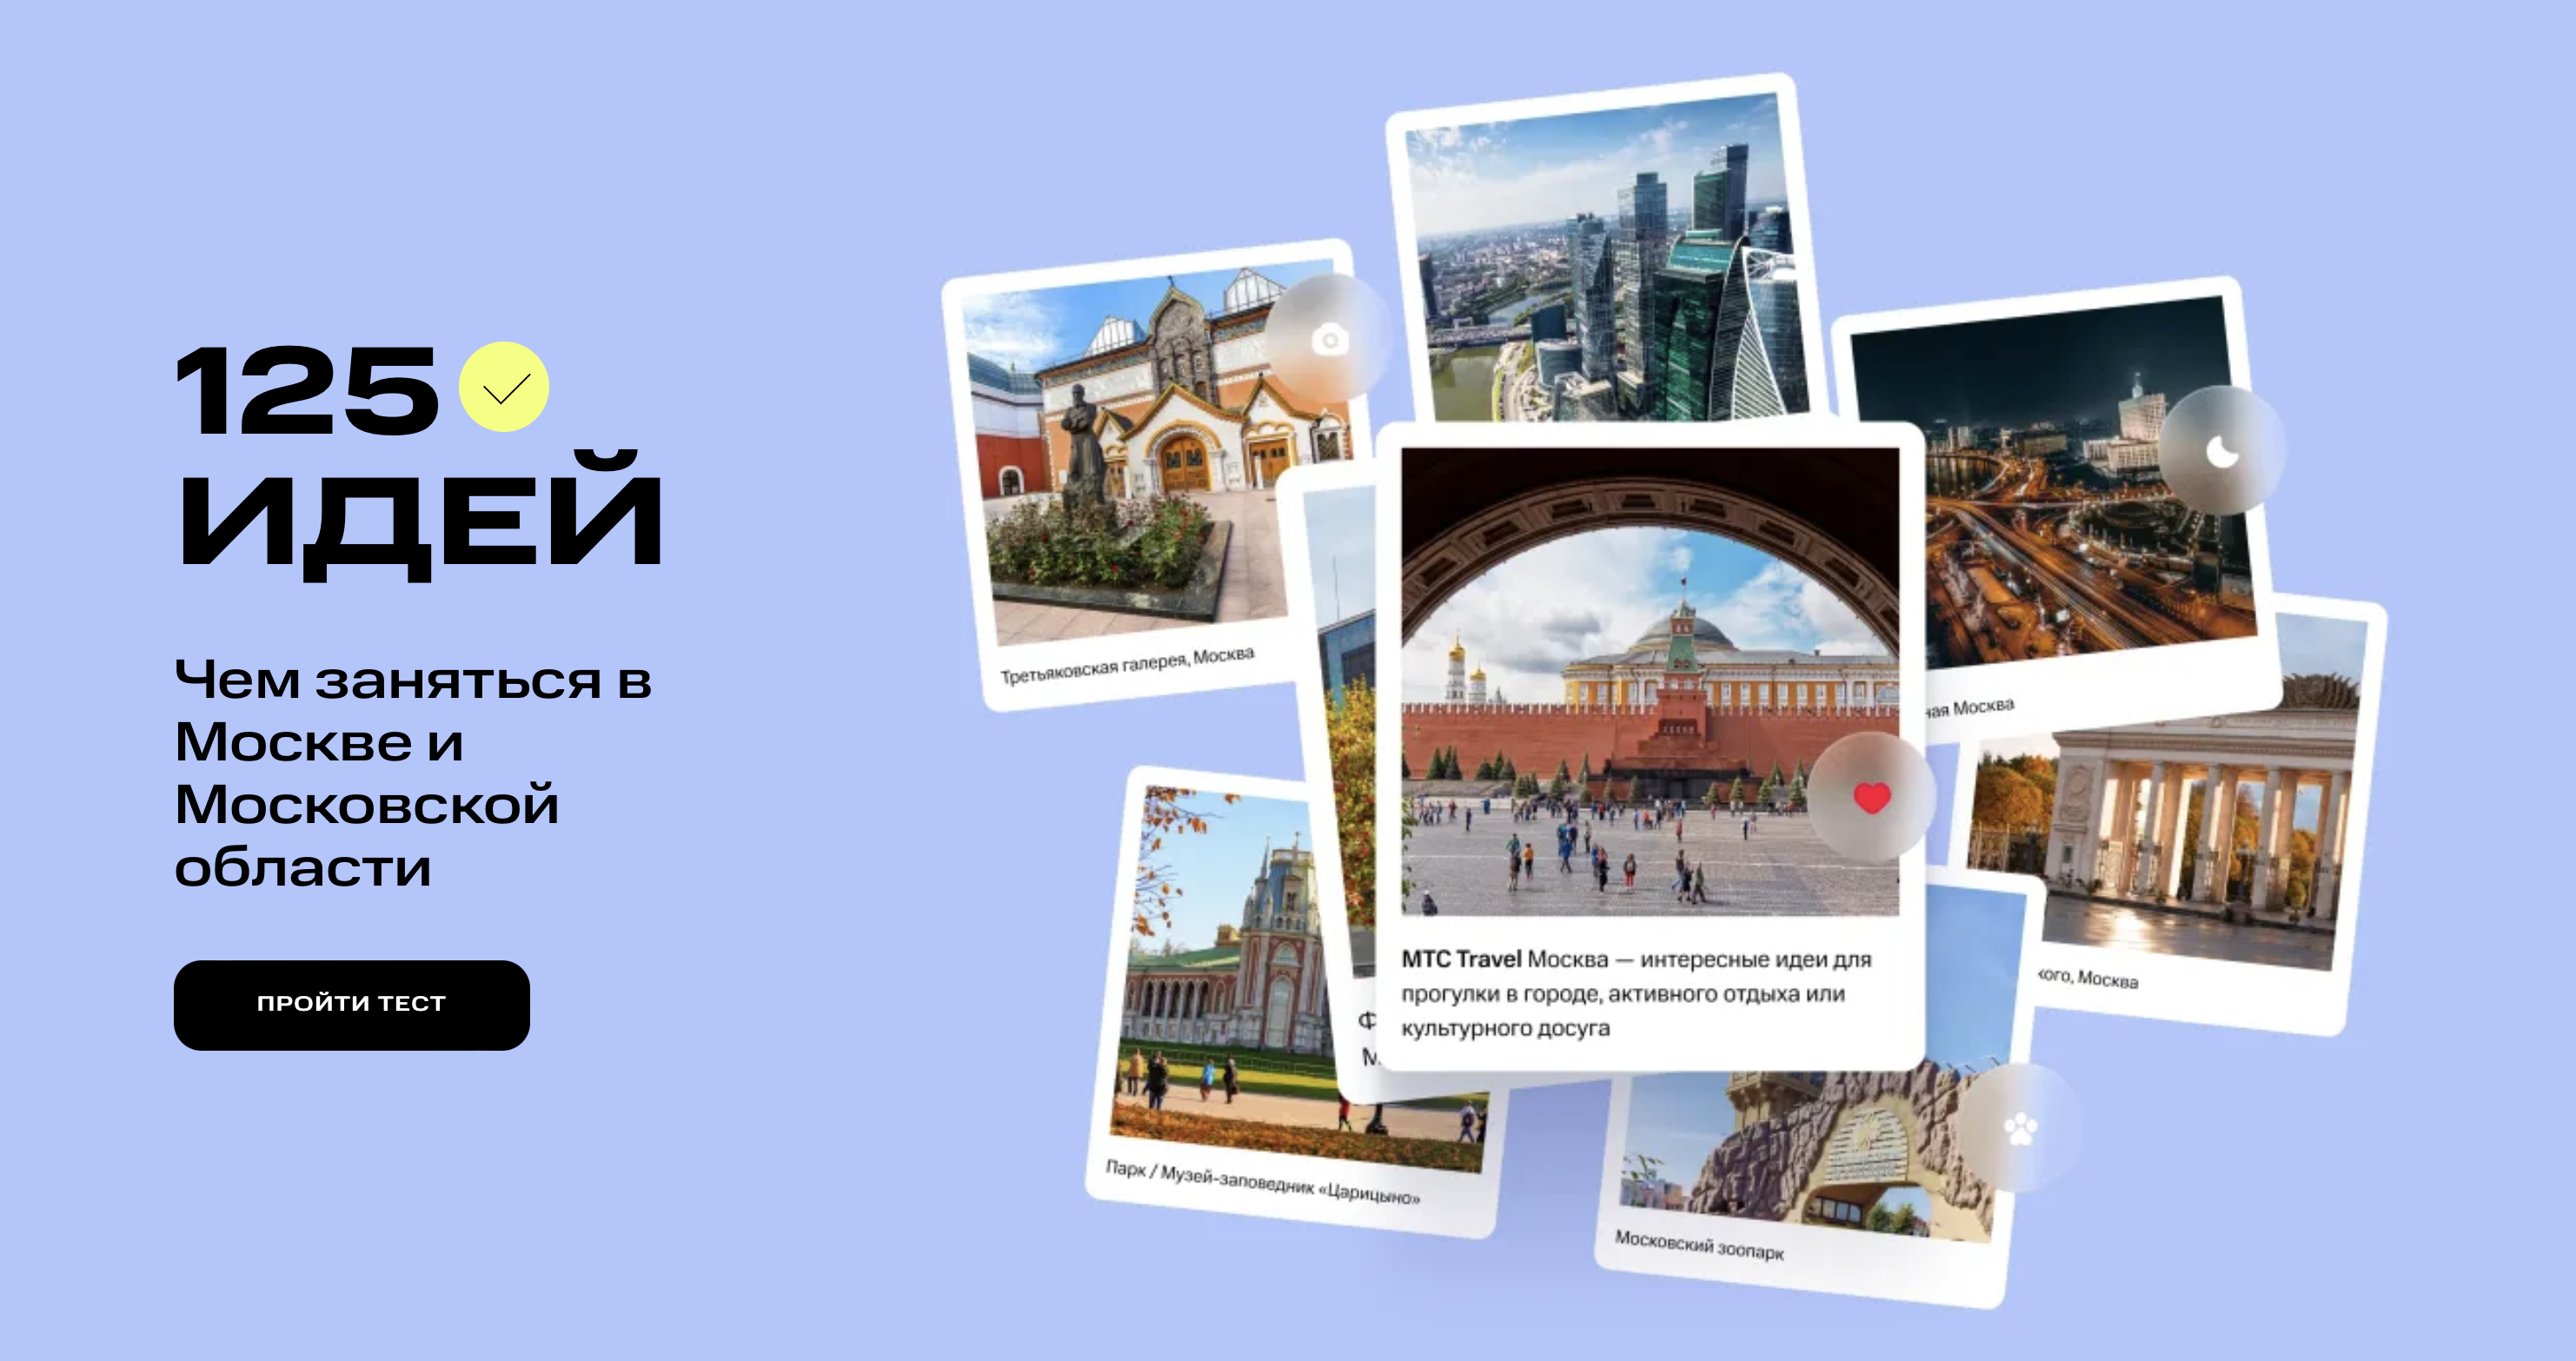 В преддверии Нового года МТС запустила цифровой гид для гостей Москвы